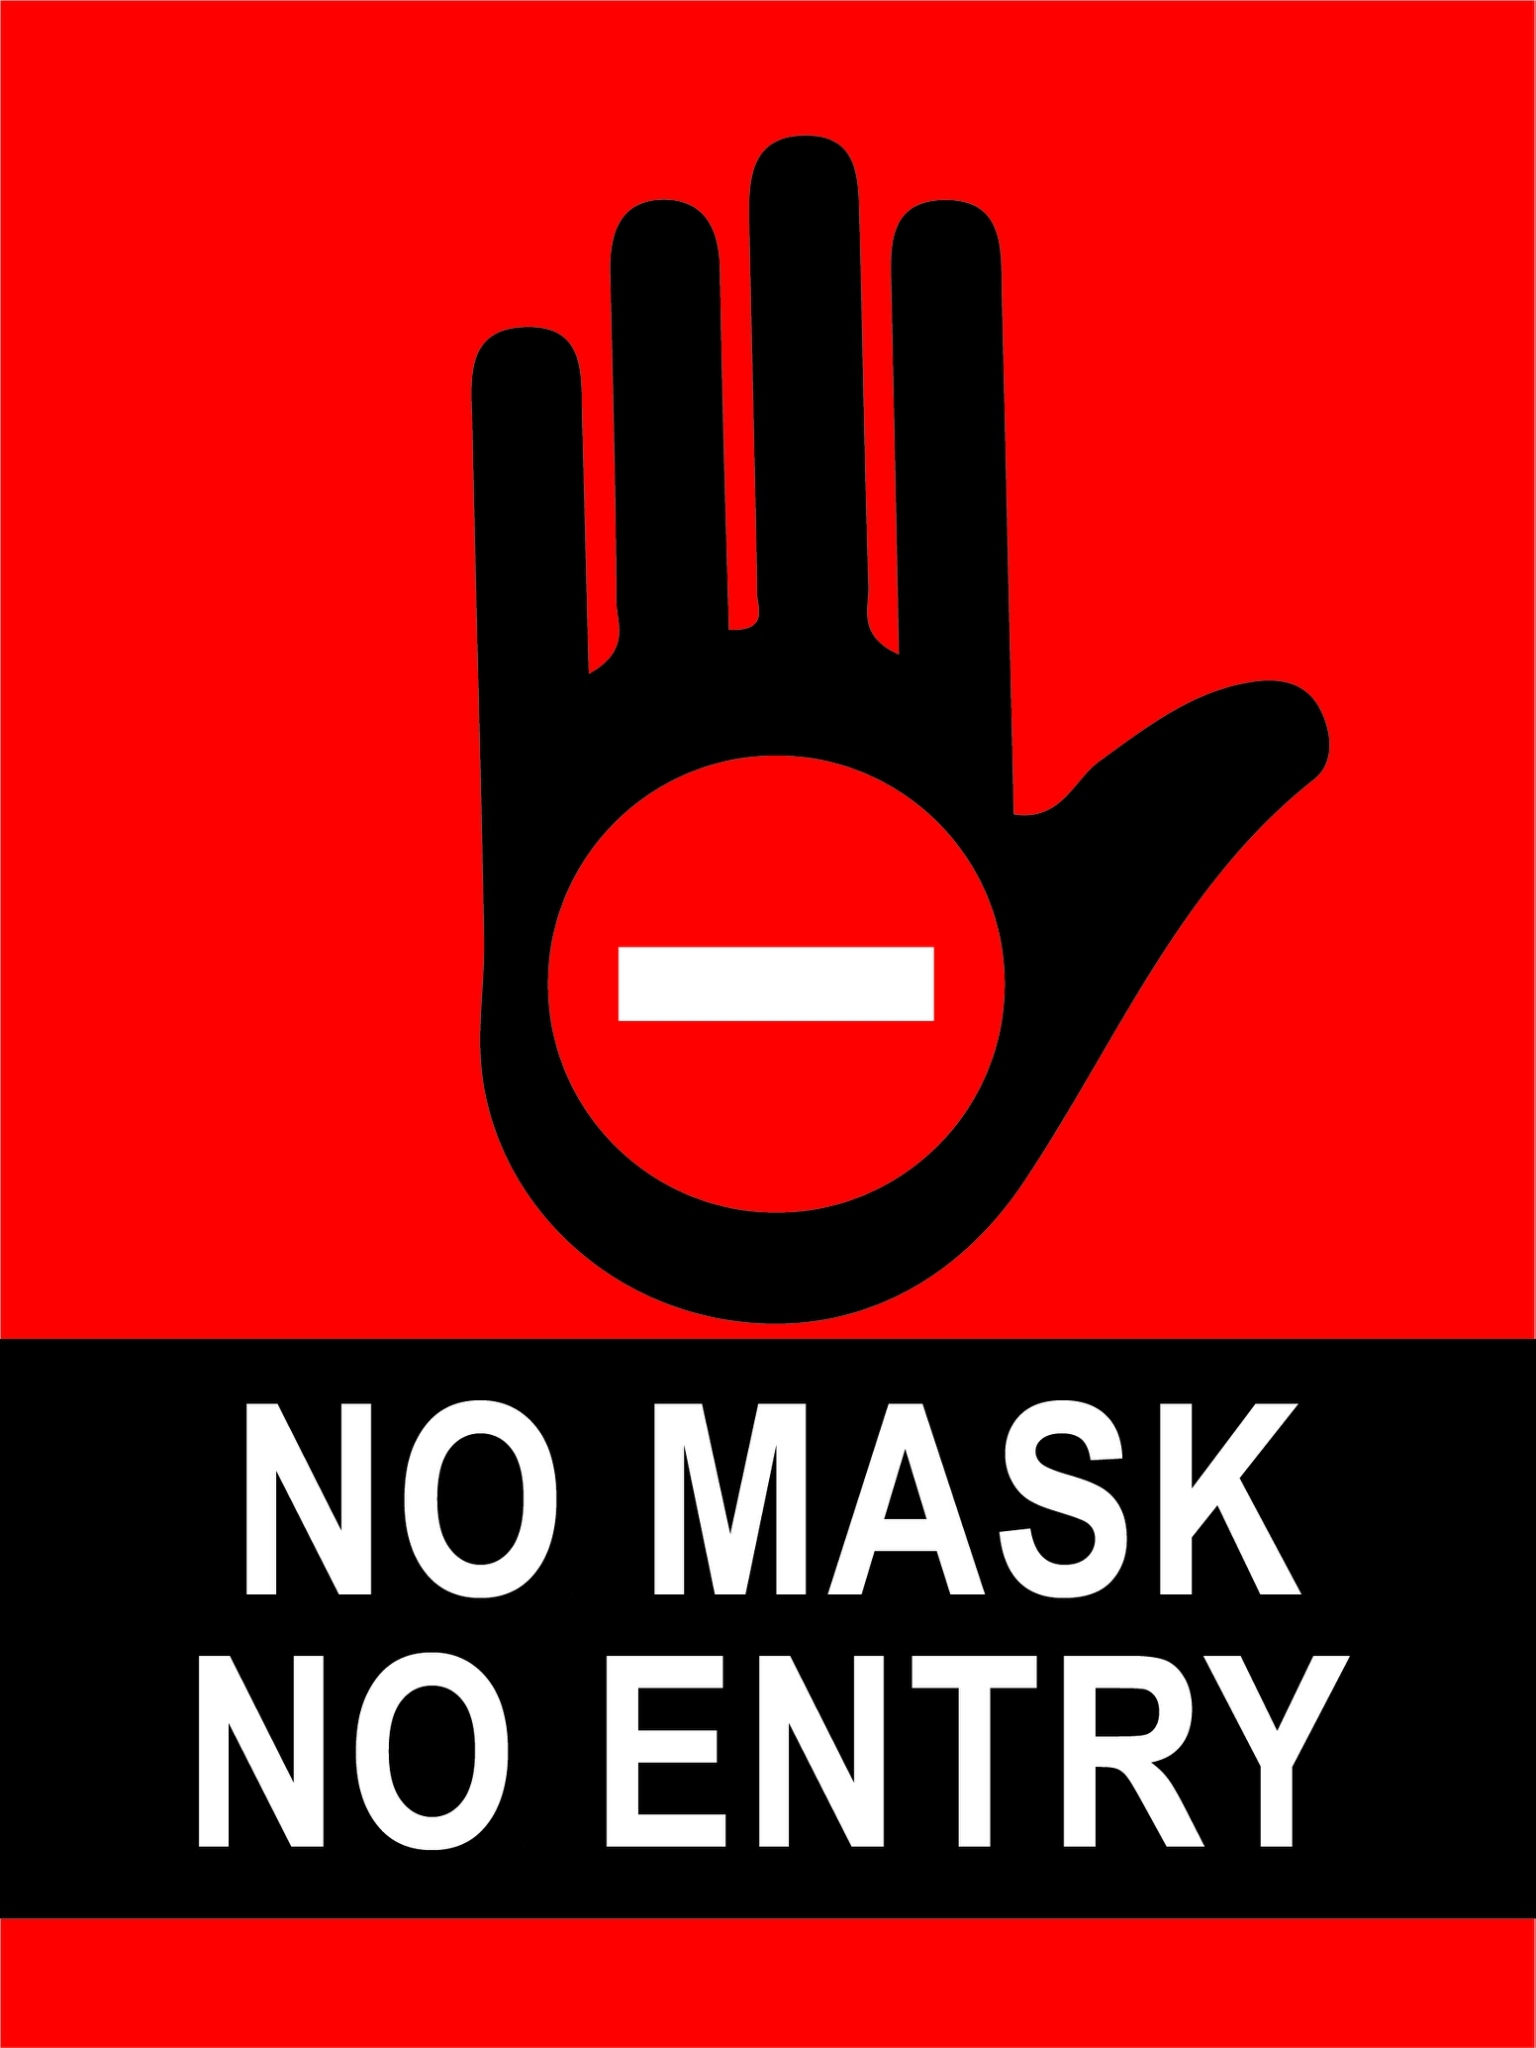 สติกเกอร์ No Mask No Entry ไม่สวมแมส ไม่อนุญาติให้เข้า